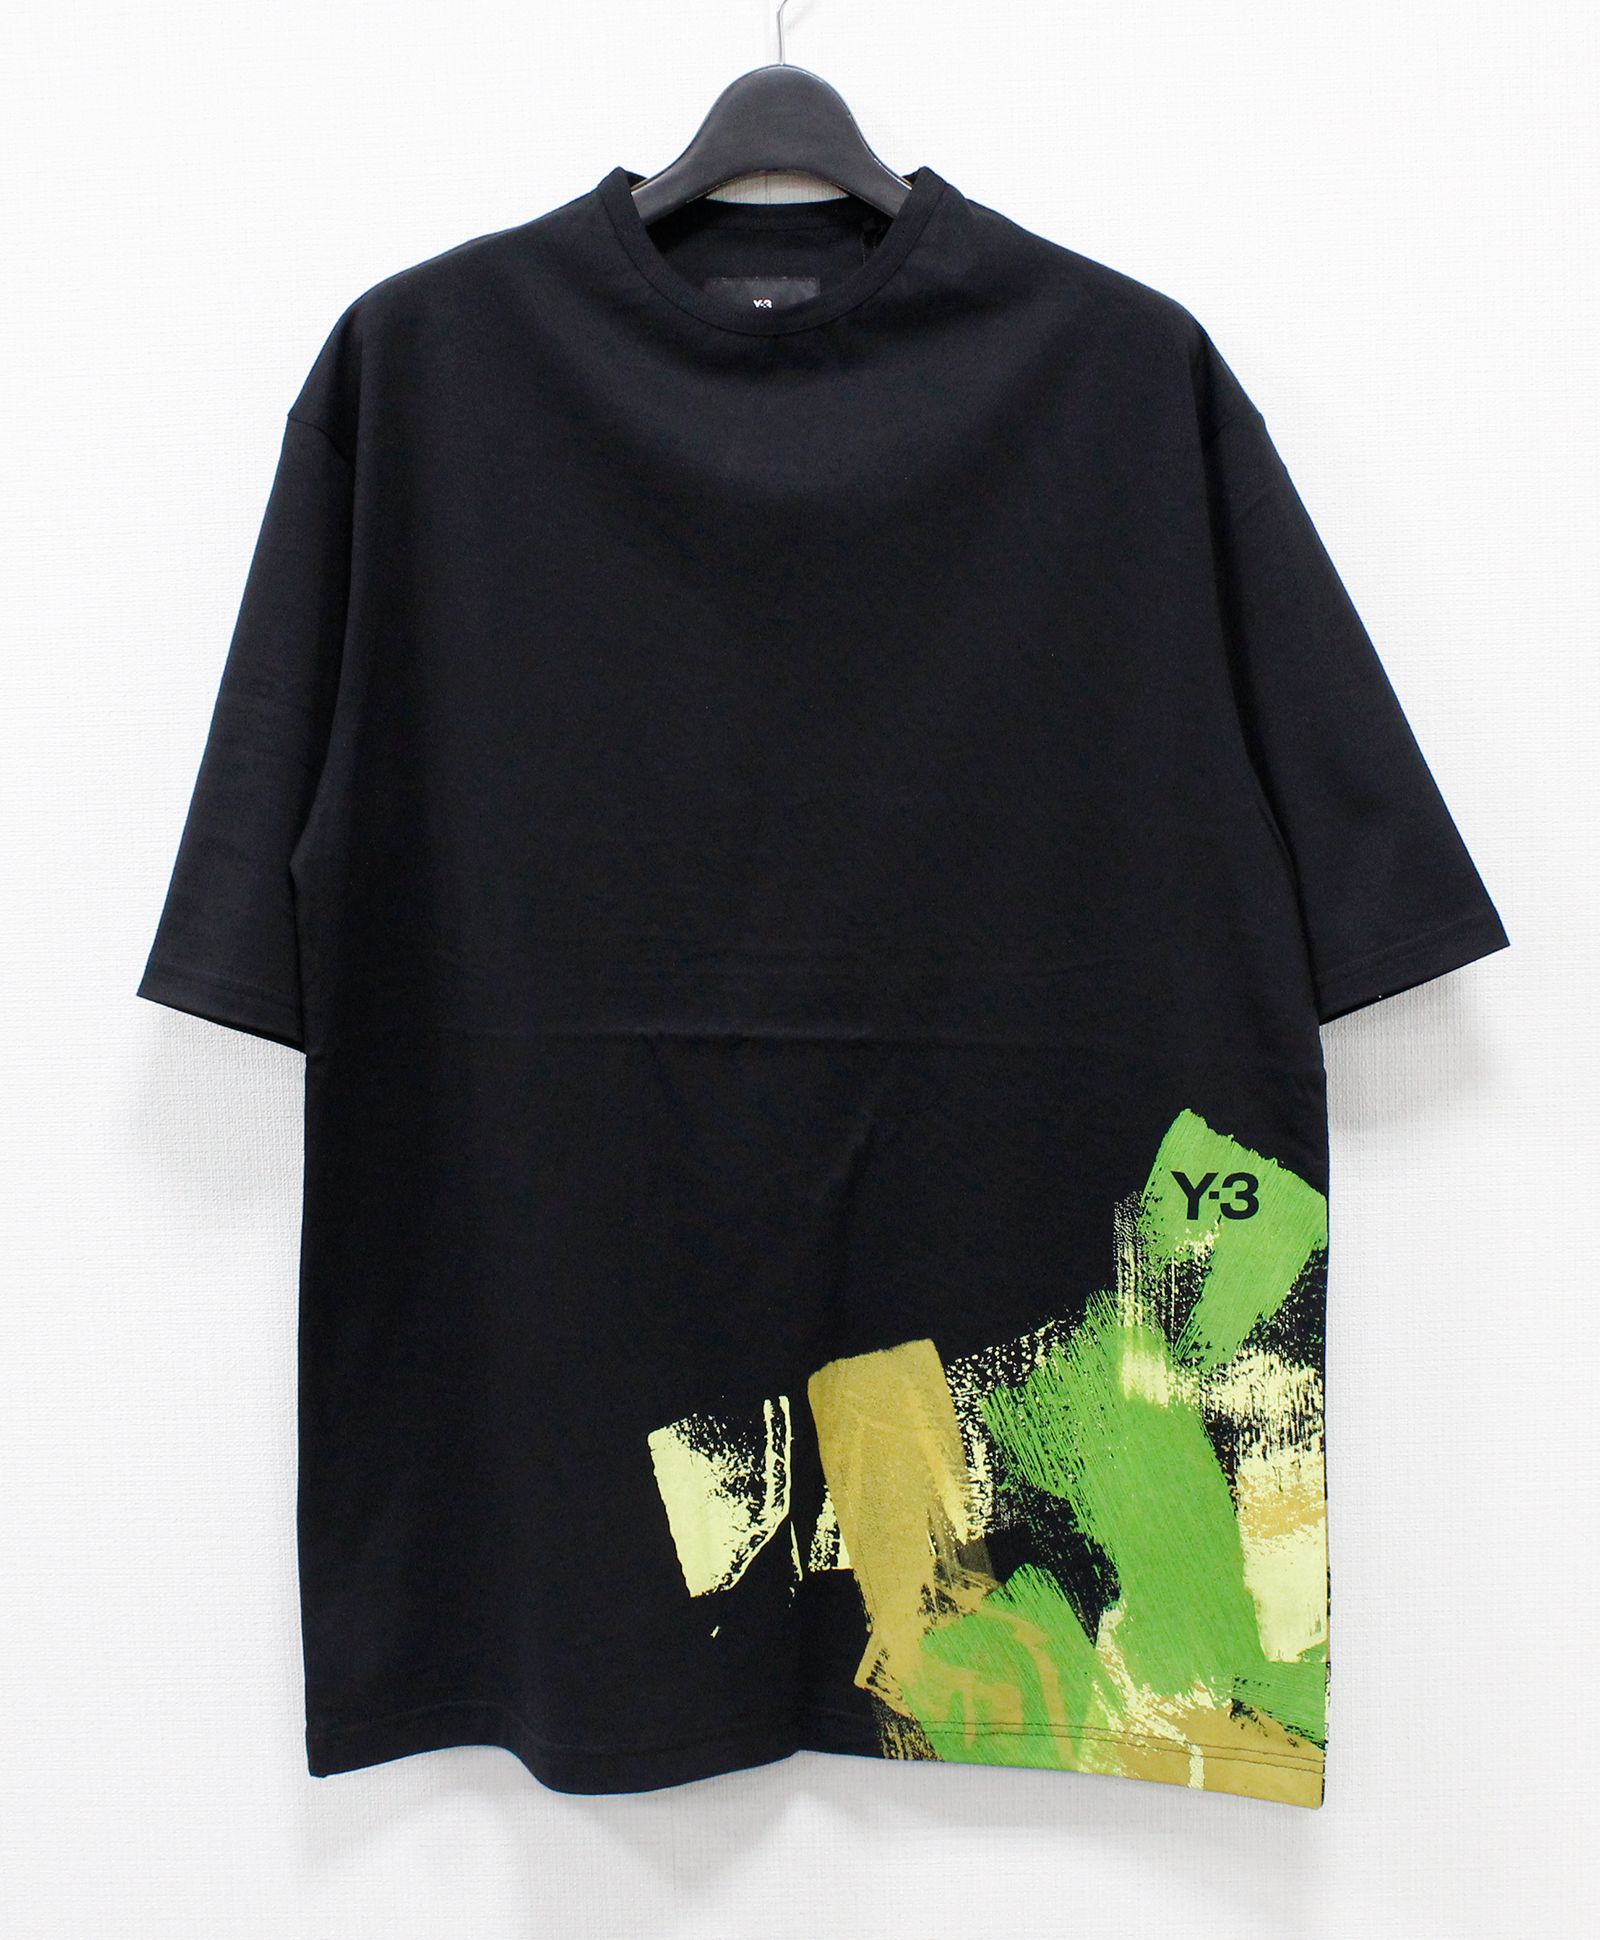 ☆本日限定価格☆Y-3 BOXプリント Tシャツ ブラック size XL